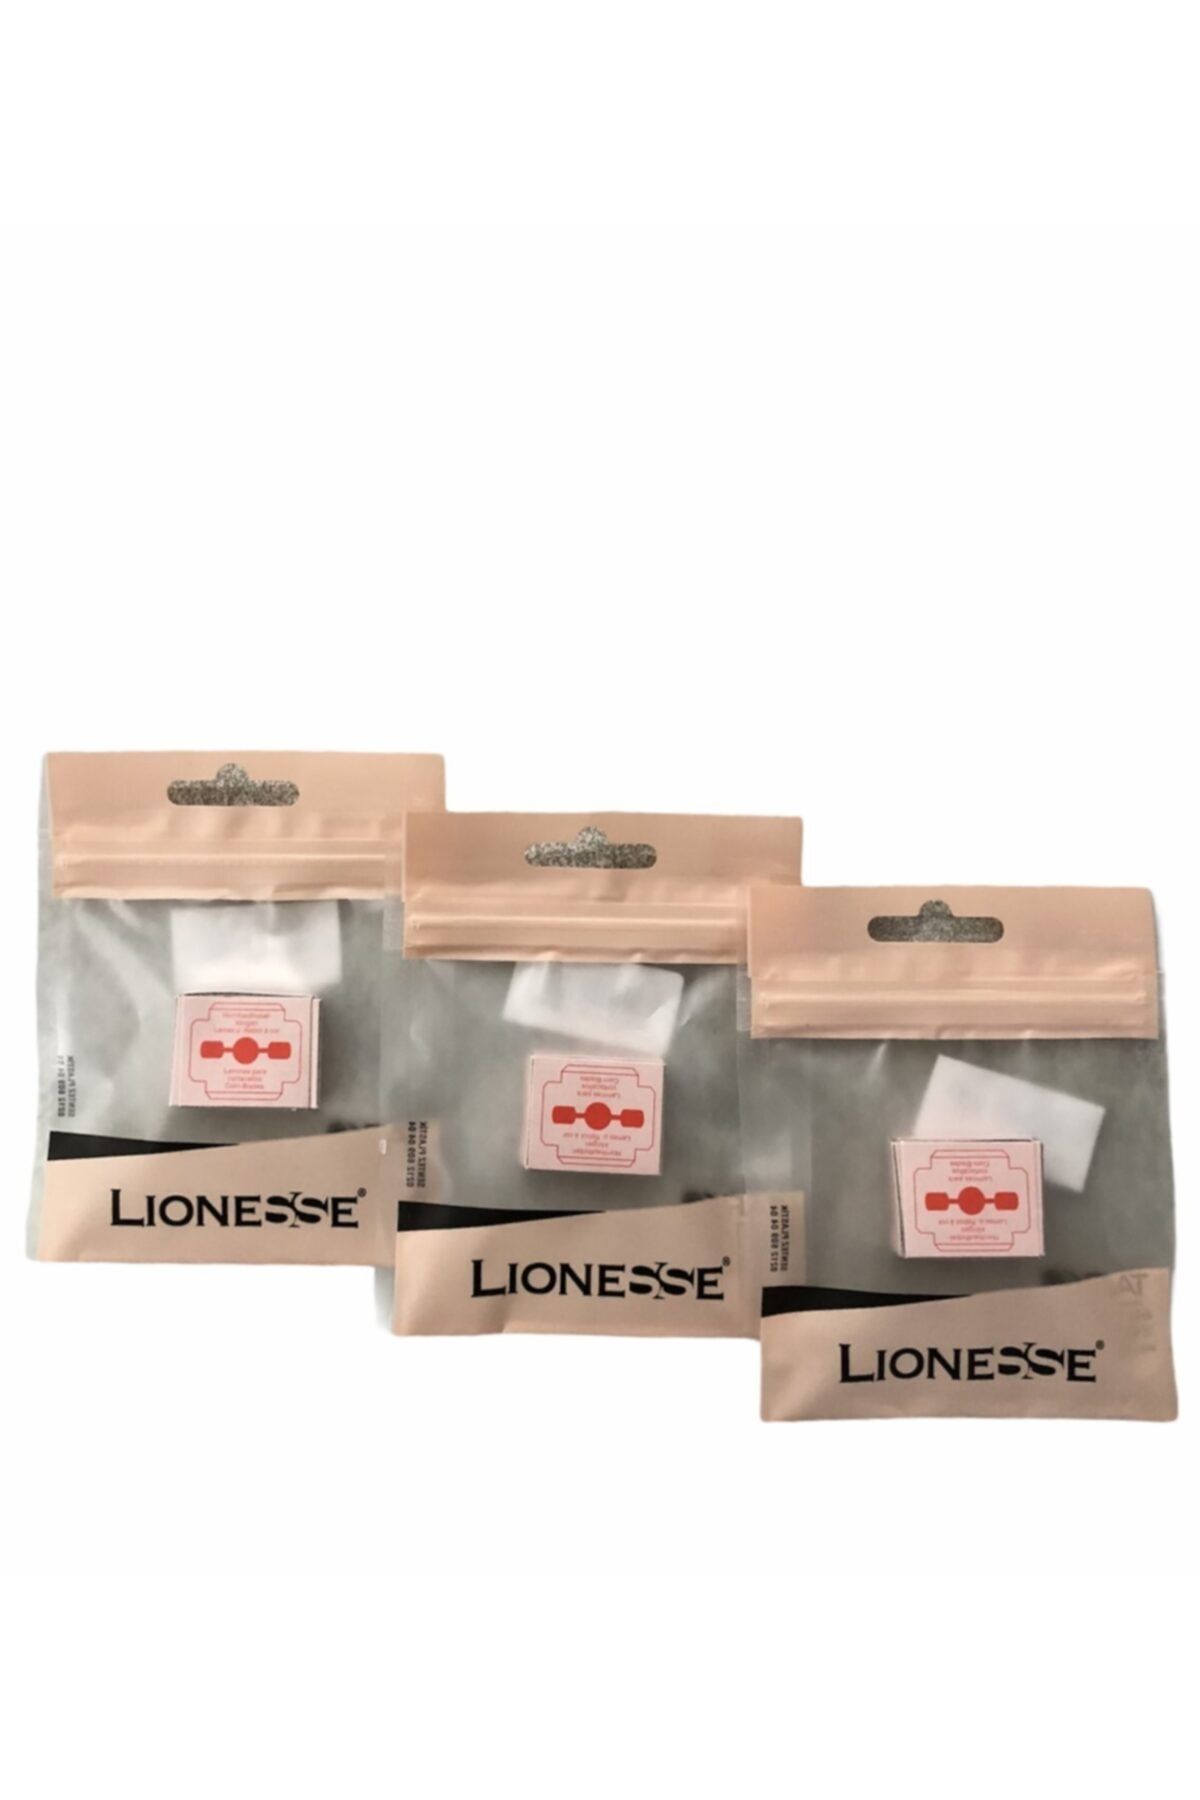 Lionesse Lıonesse Raspa Jileti 3'lü Paket 7494